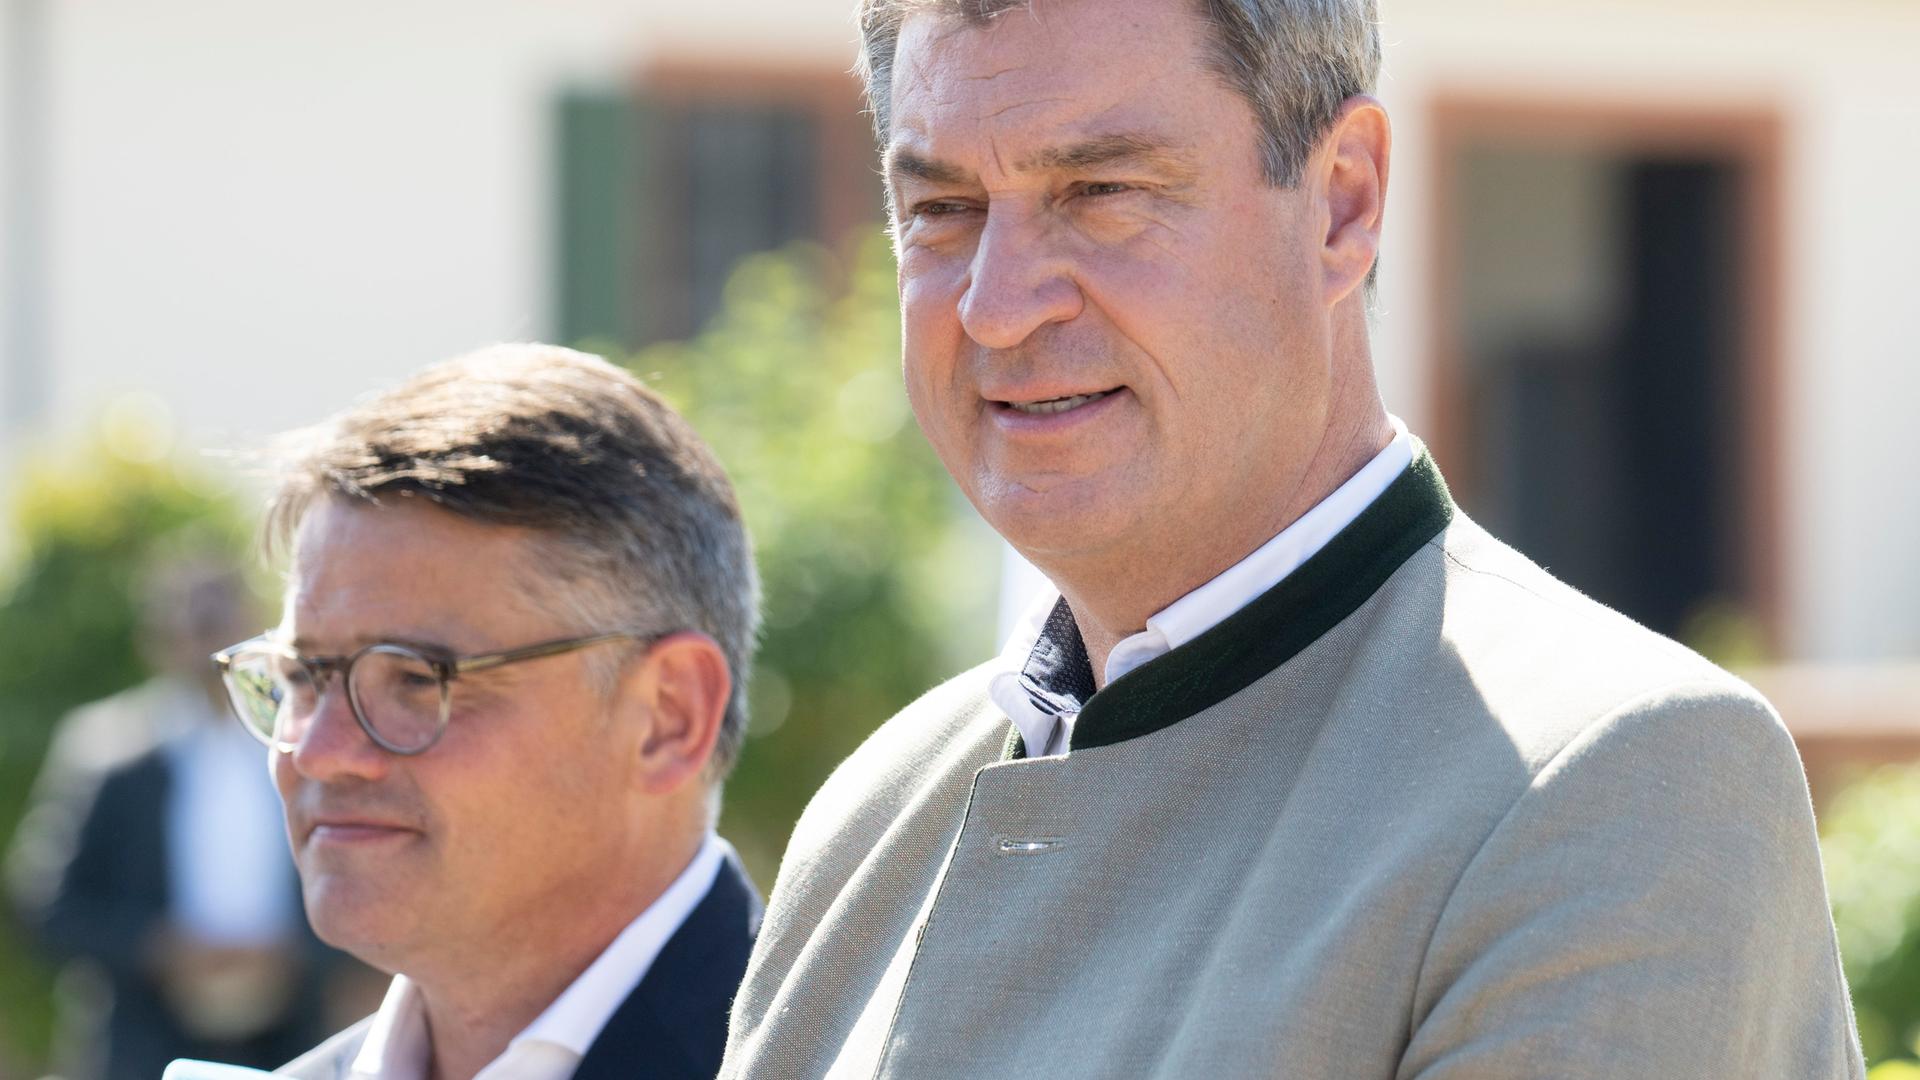 Boris Rhein (CDU), Ministerpräsident von Hessen, und Markus Söder (CSU), Ministerpräsident von Bayern, bei einem gemeinsamen Wahlkampfauftritt im hessischen Seligenstadt.